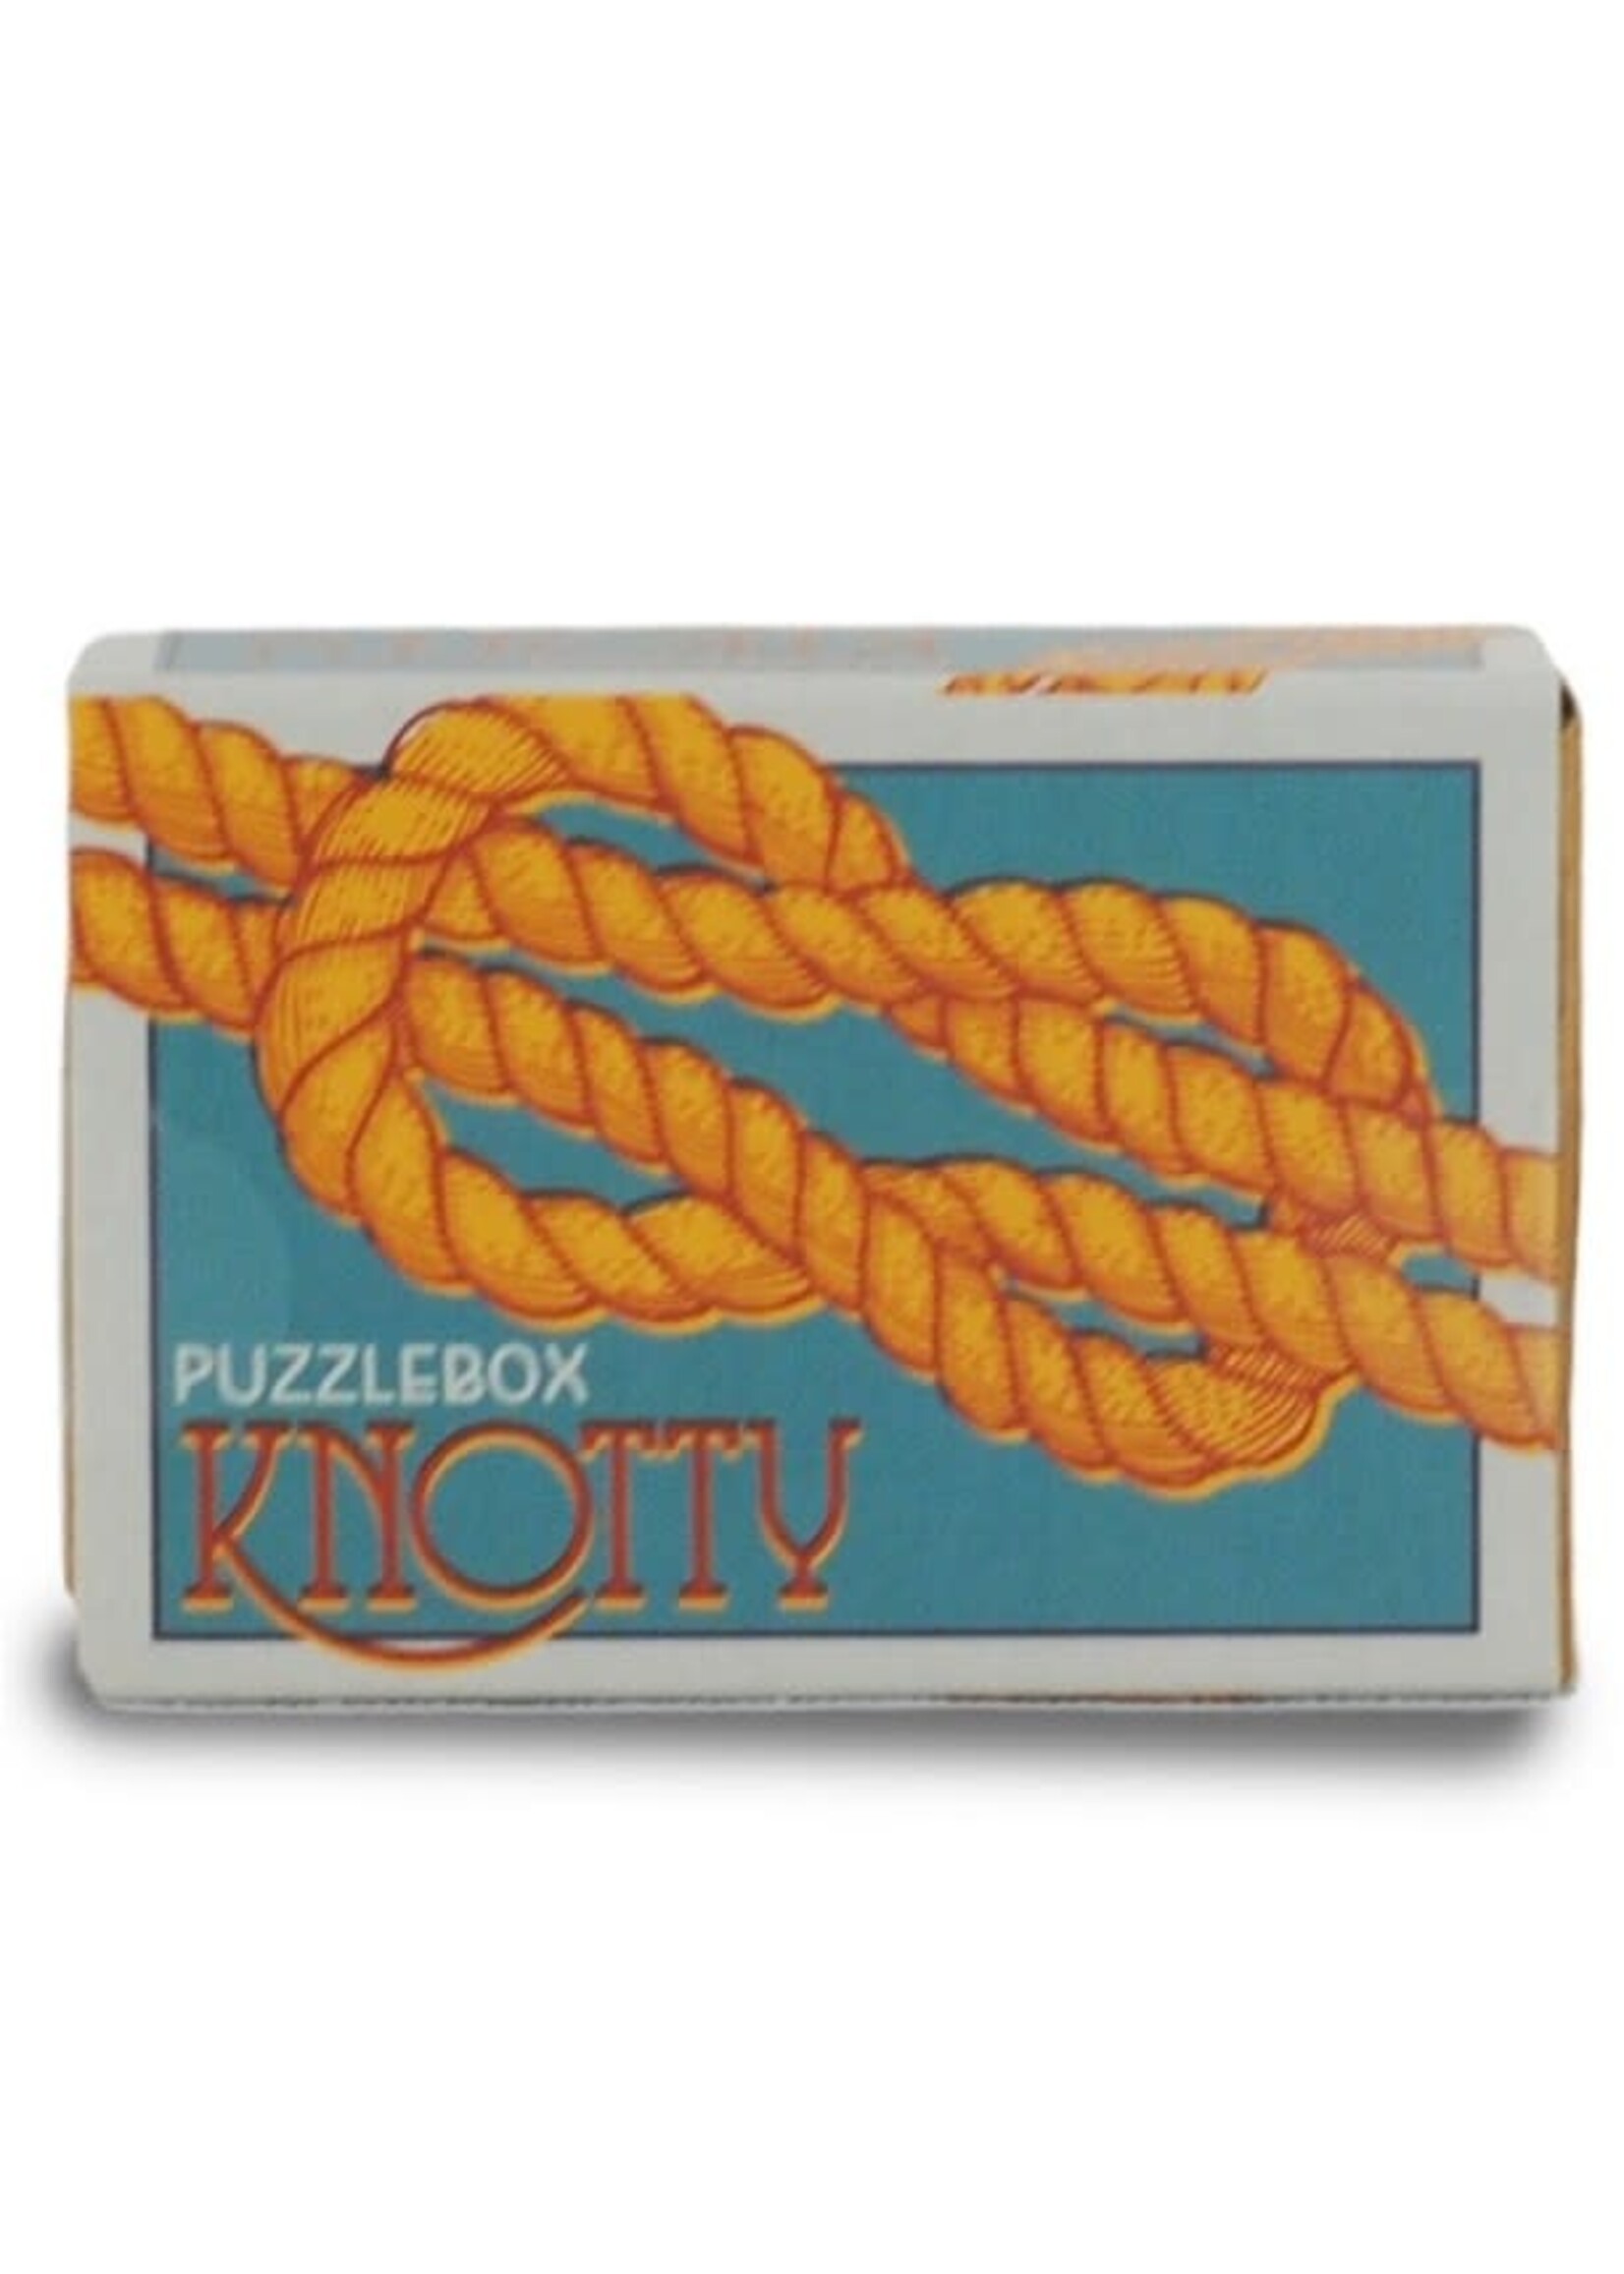 Project Genius Puzzlebox Matchbox-Sized Brainteaser Puzzle - Knotty